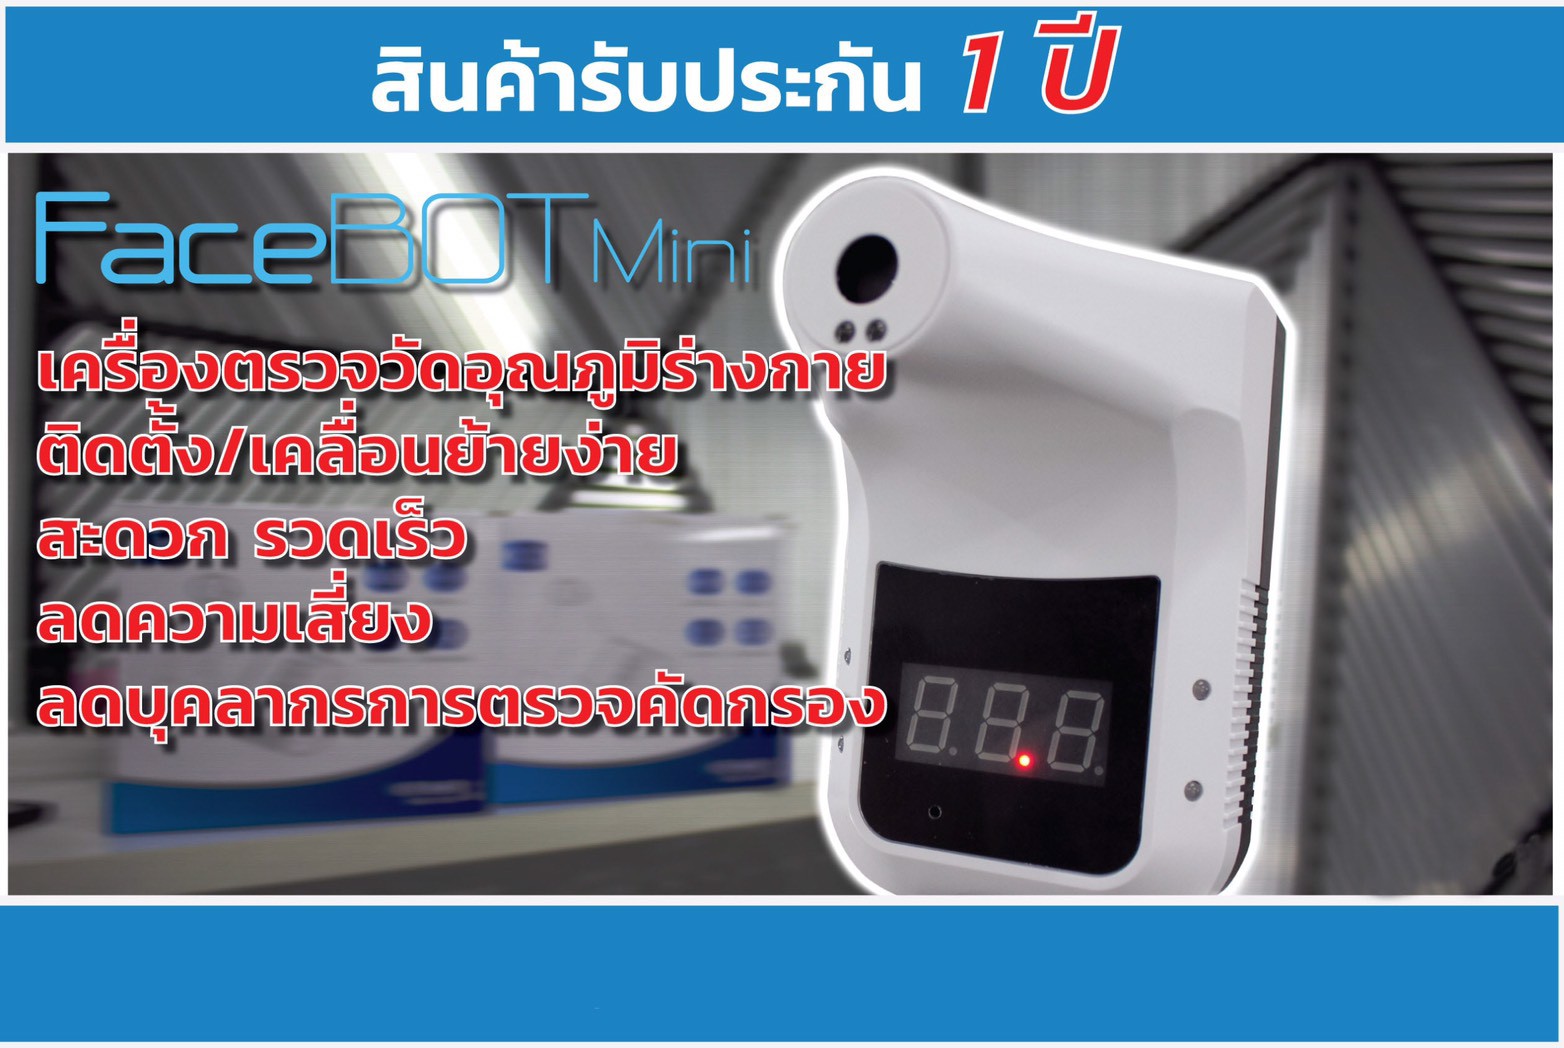 FaceBOT Mini เครื่องตรวจวัดอุณหภูมิร่างกาย